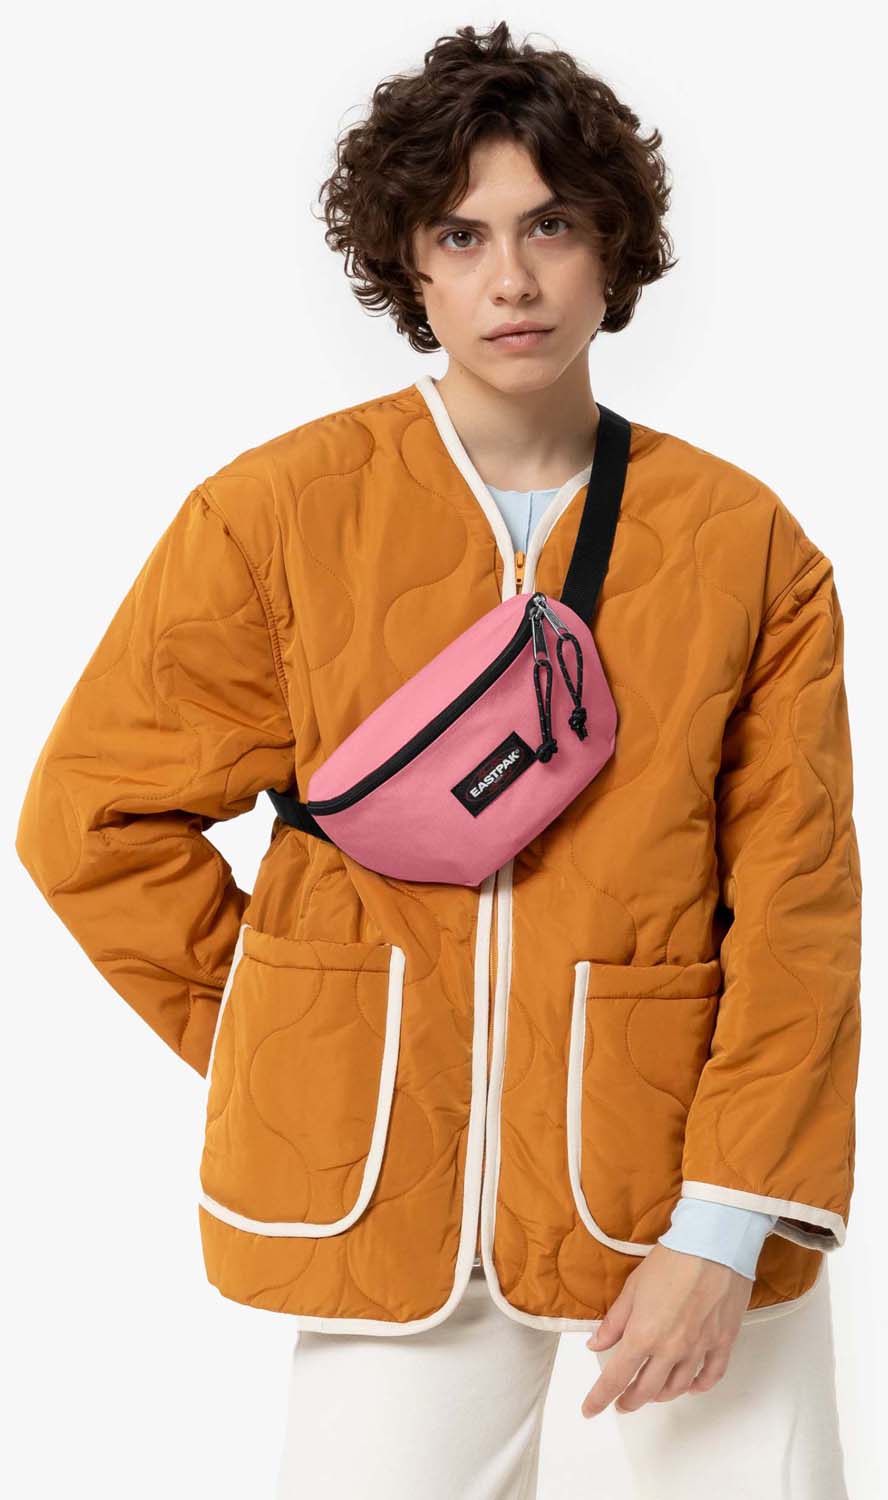 Eastpak Springer Waist Bag - Summer Pink